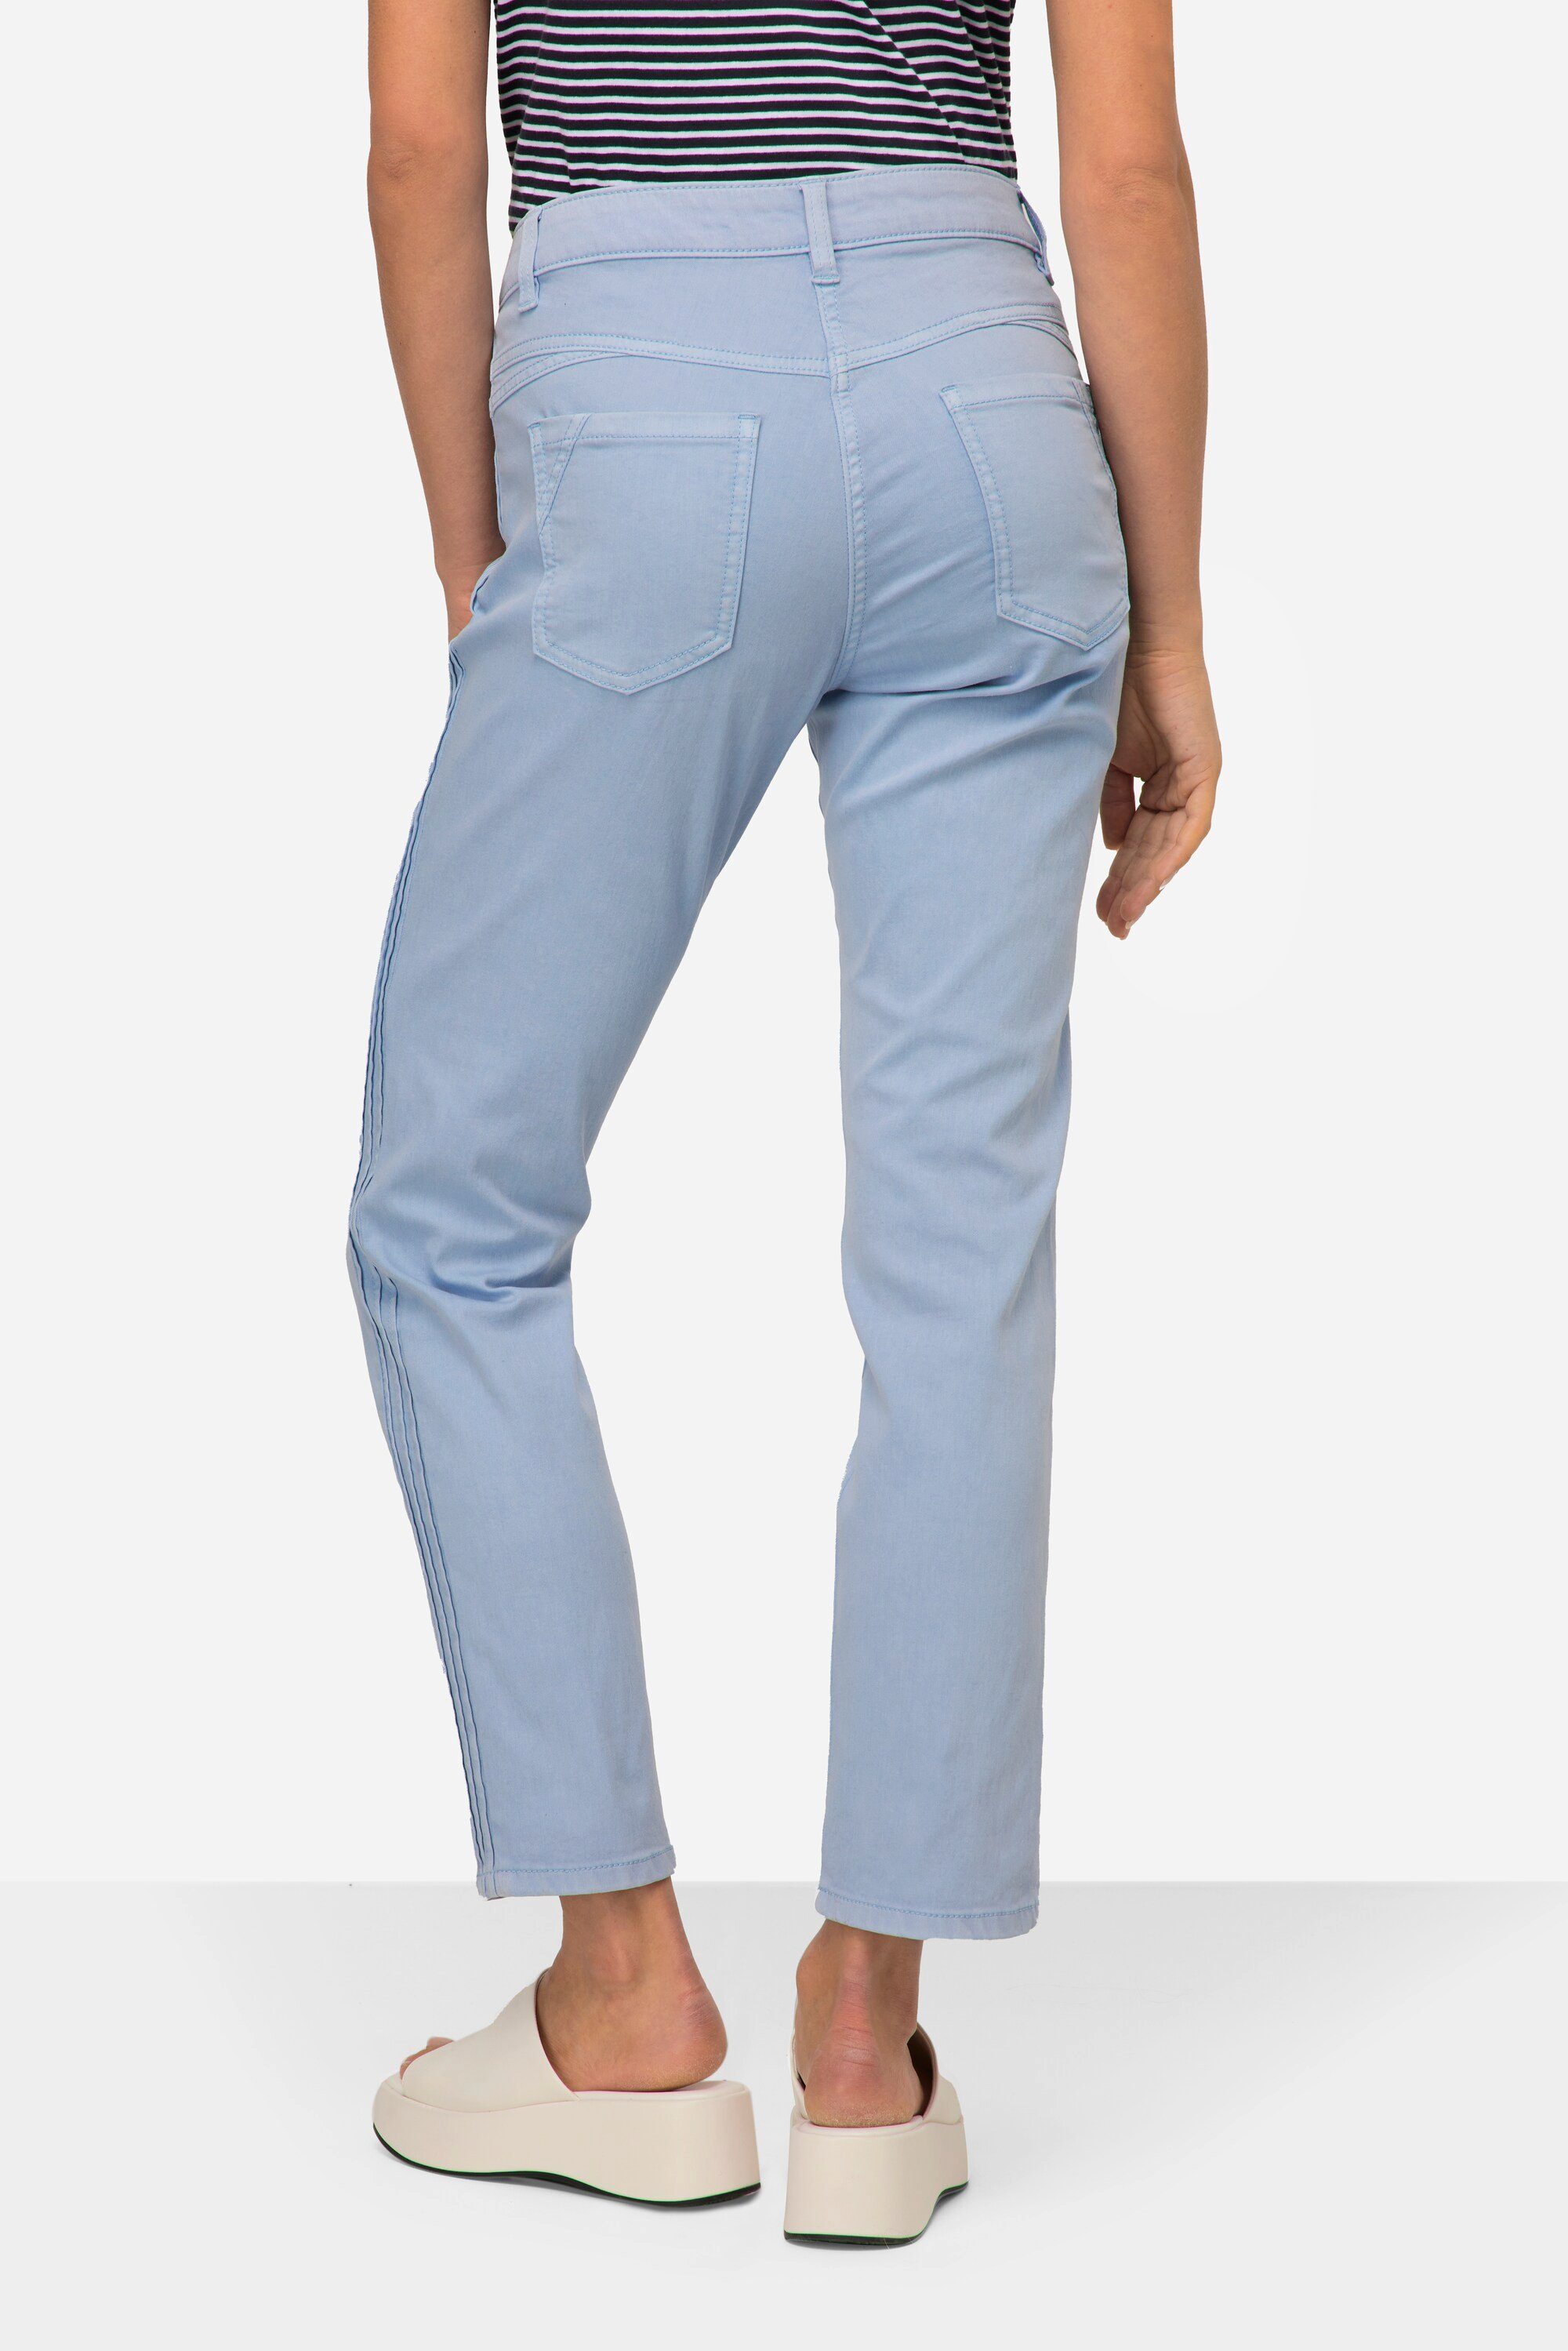 Passform hellblau 5-Pocket-Jeans Jeans Tina Laurasøn gerade seitliche Zierfalten